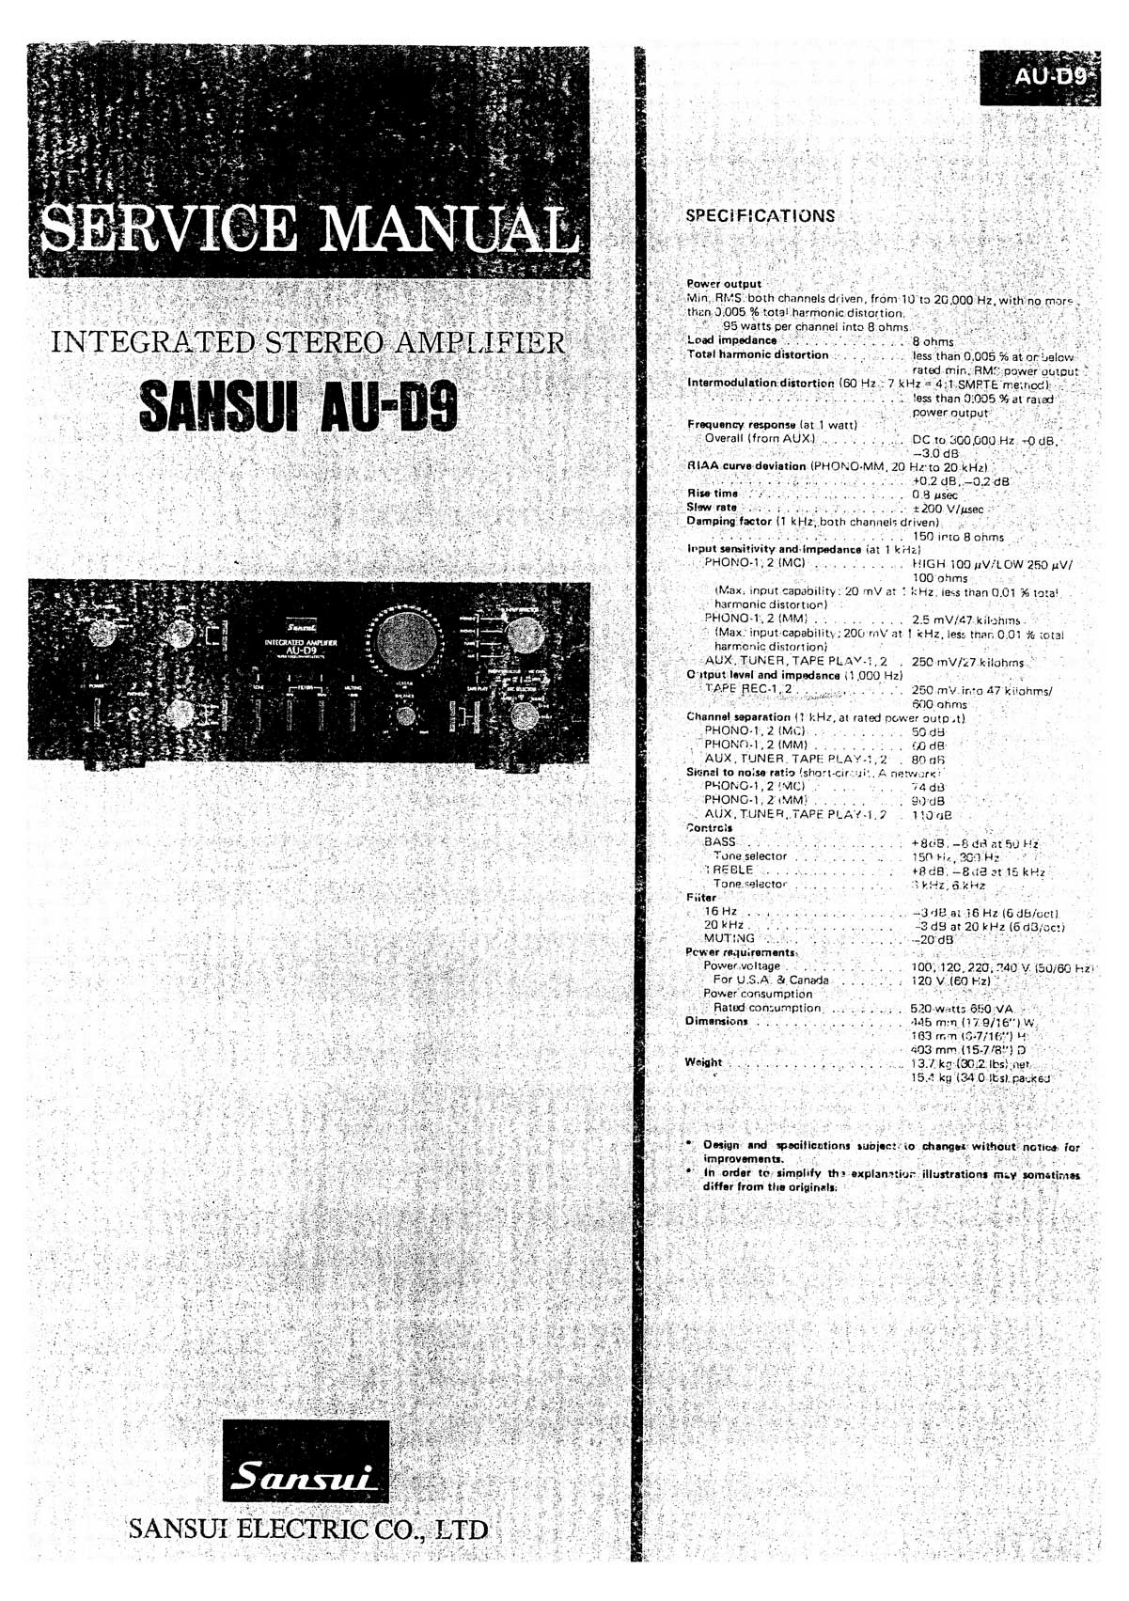 Sansui AU-D9 Service Manual